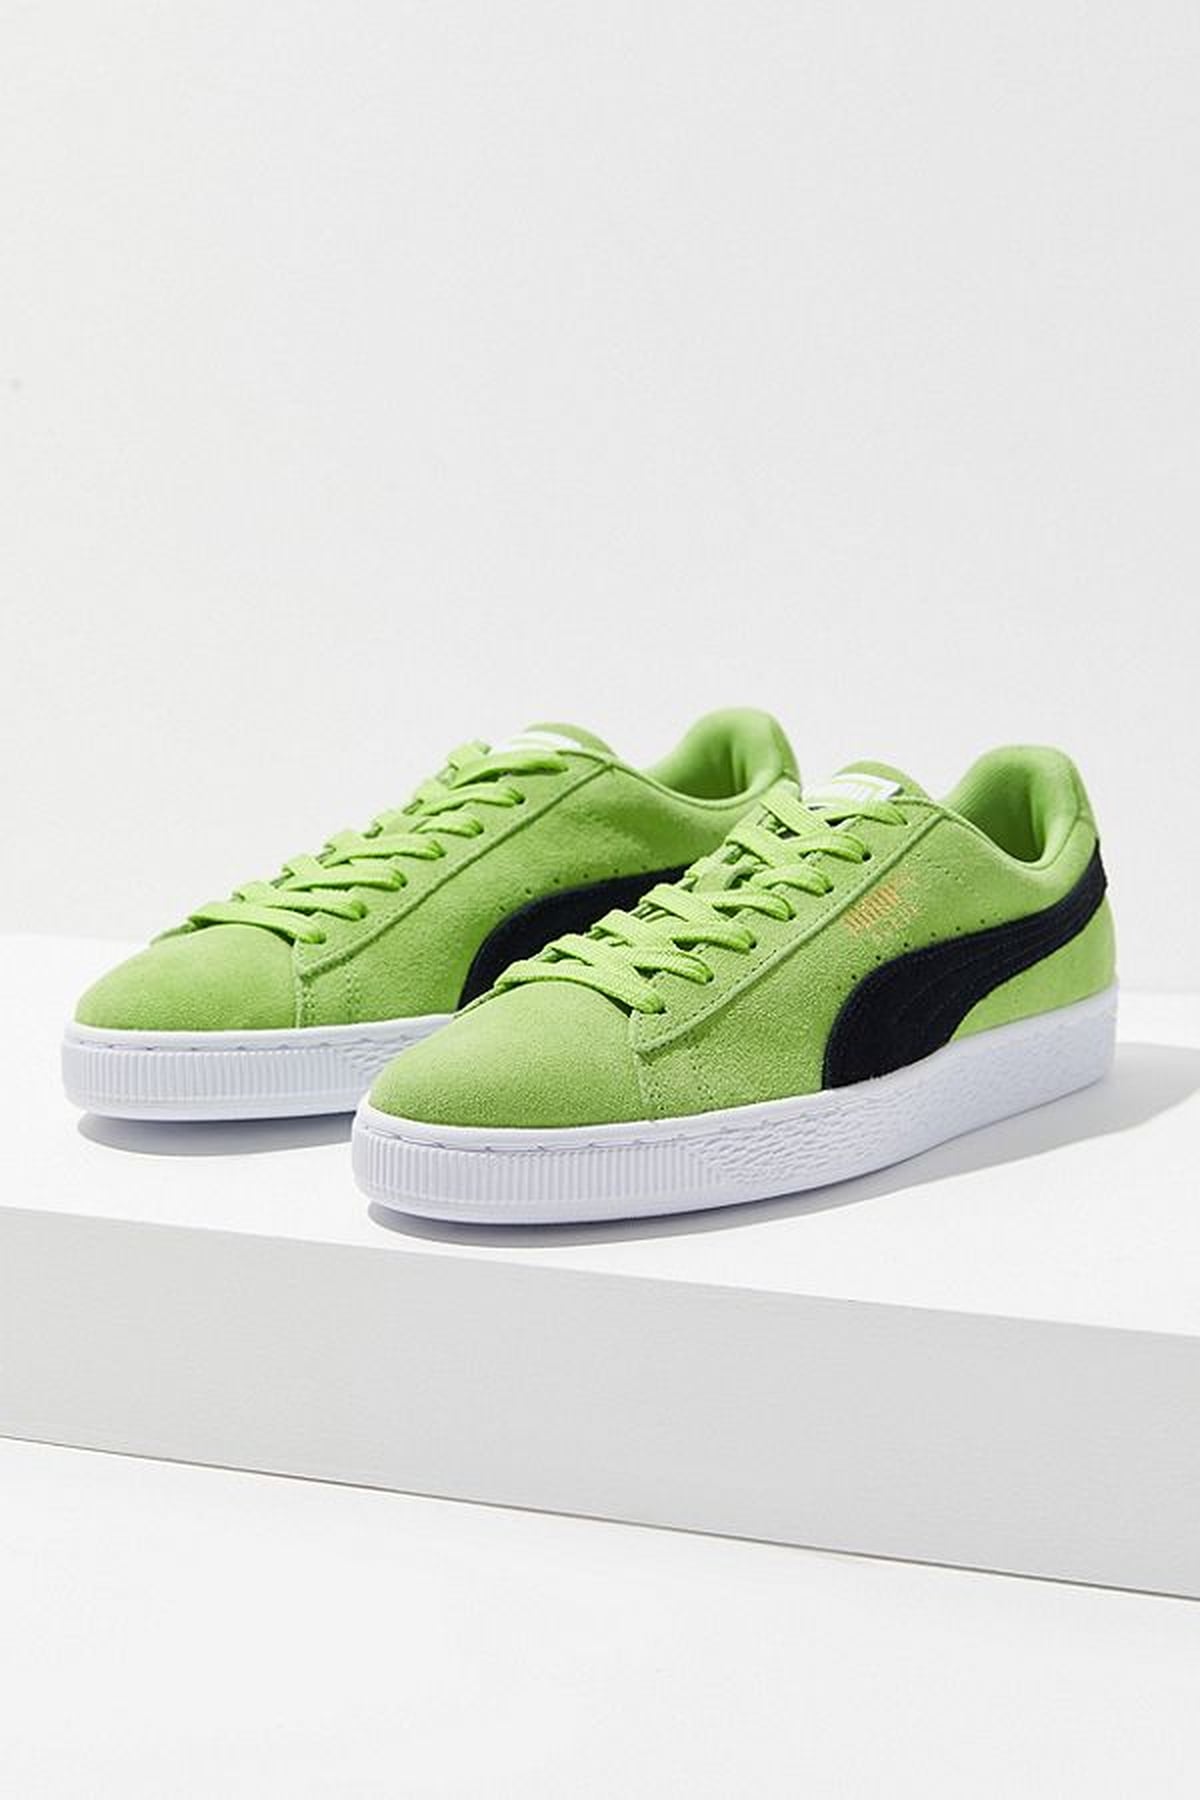 Slime Green Color Trend | POPSUGAR Fashion